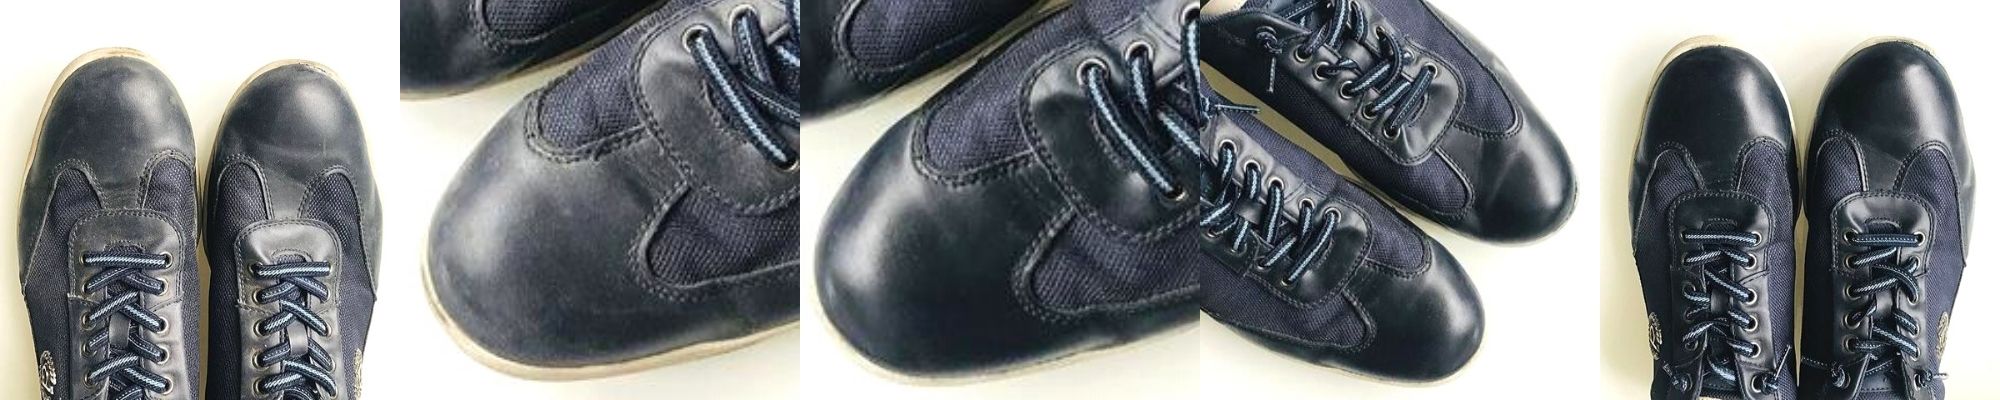 Odřené boty okopané špičky bot kožené modré tenisky oprava renovace modrý krém na boty shoe cream 117 Navy blue trg the one